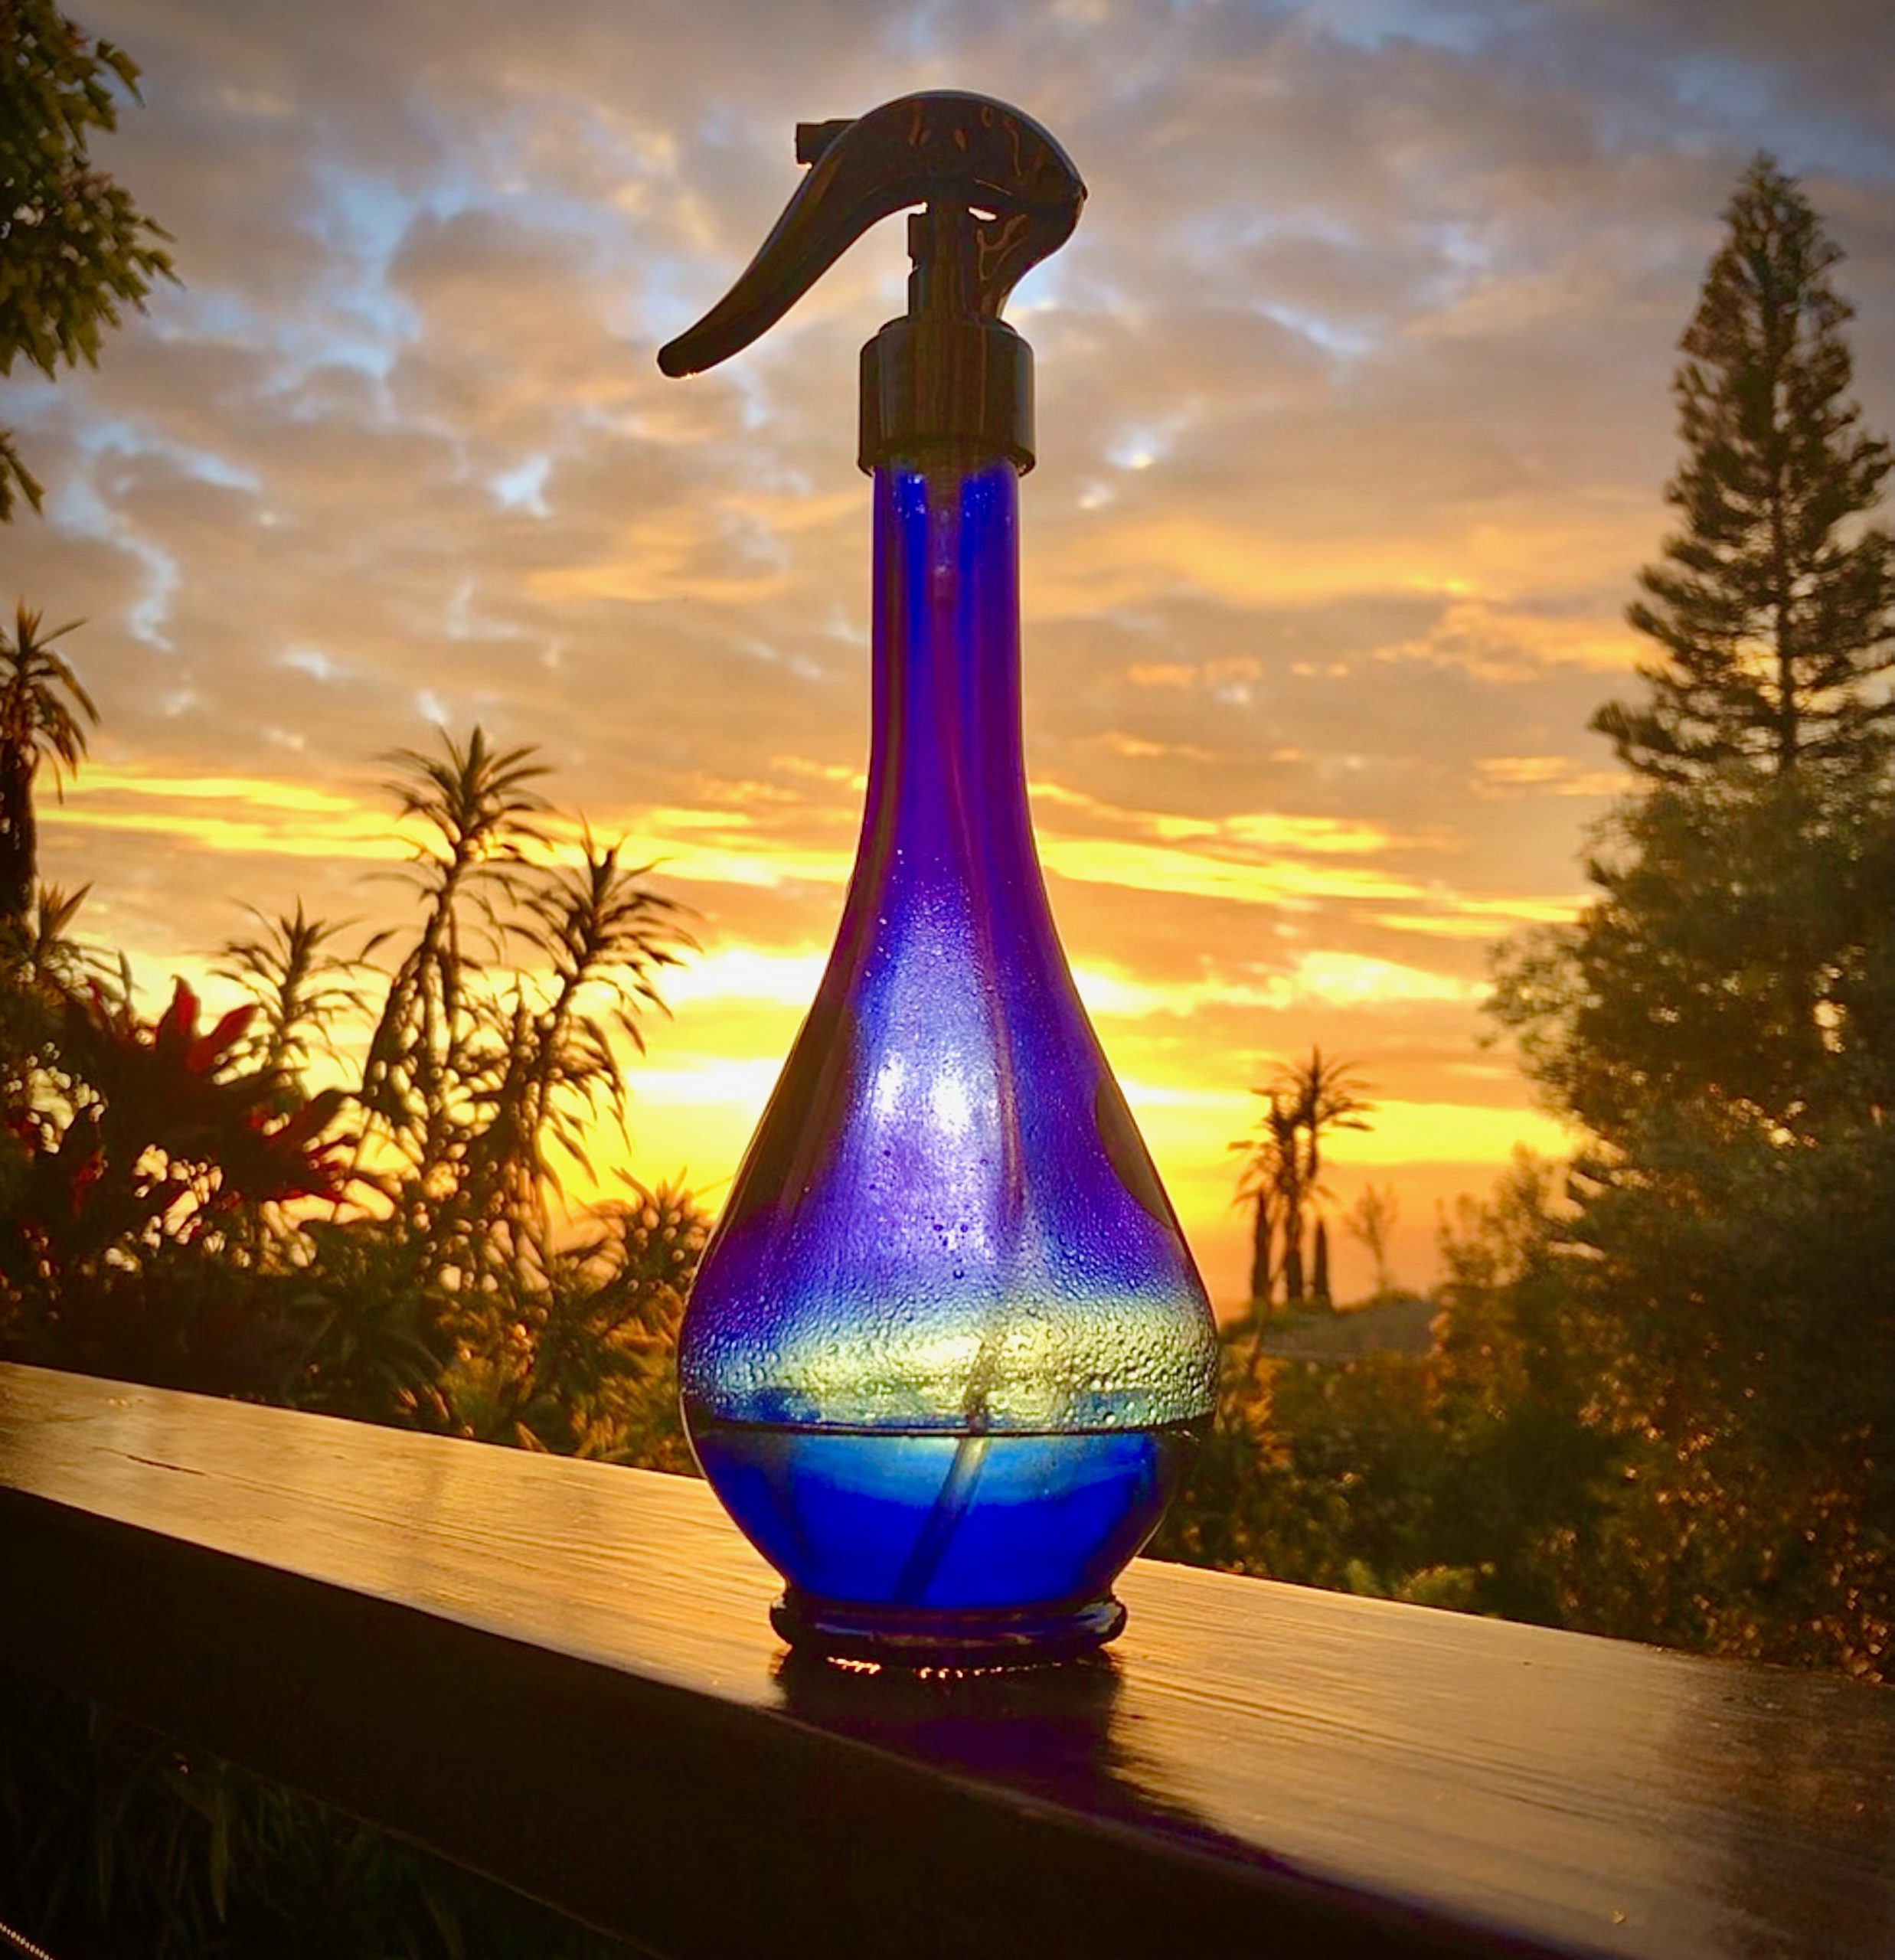 The Genie Water Drop Spritzer